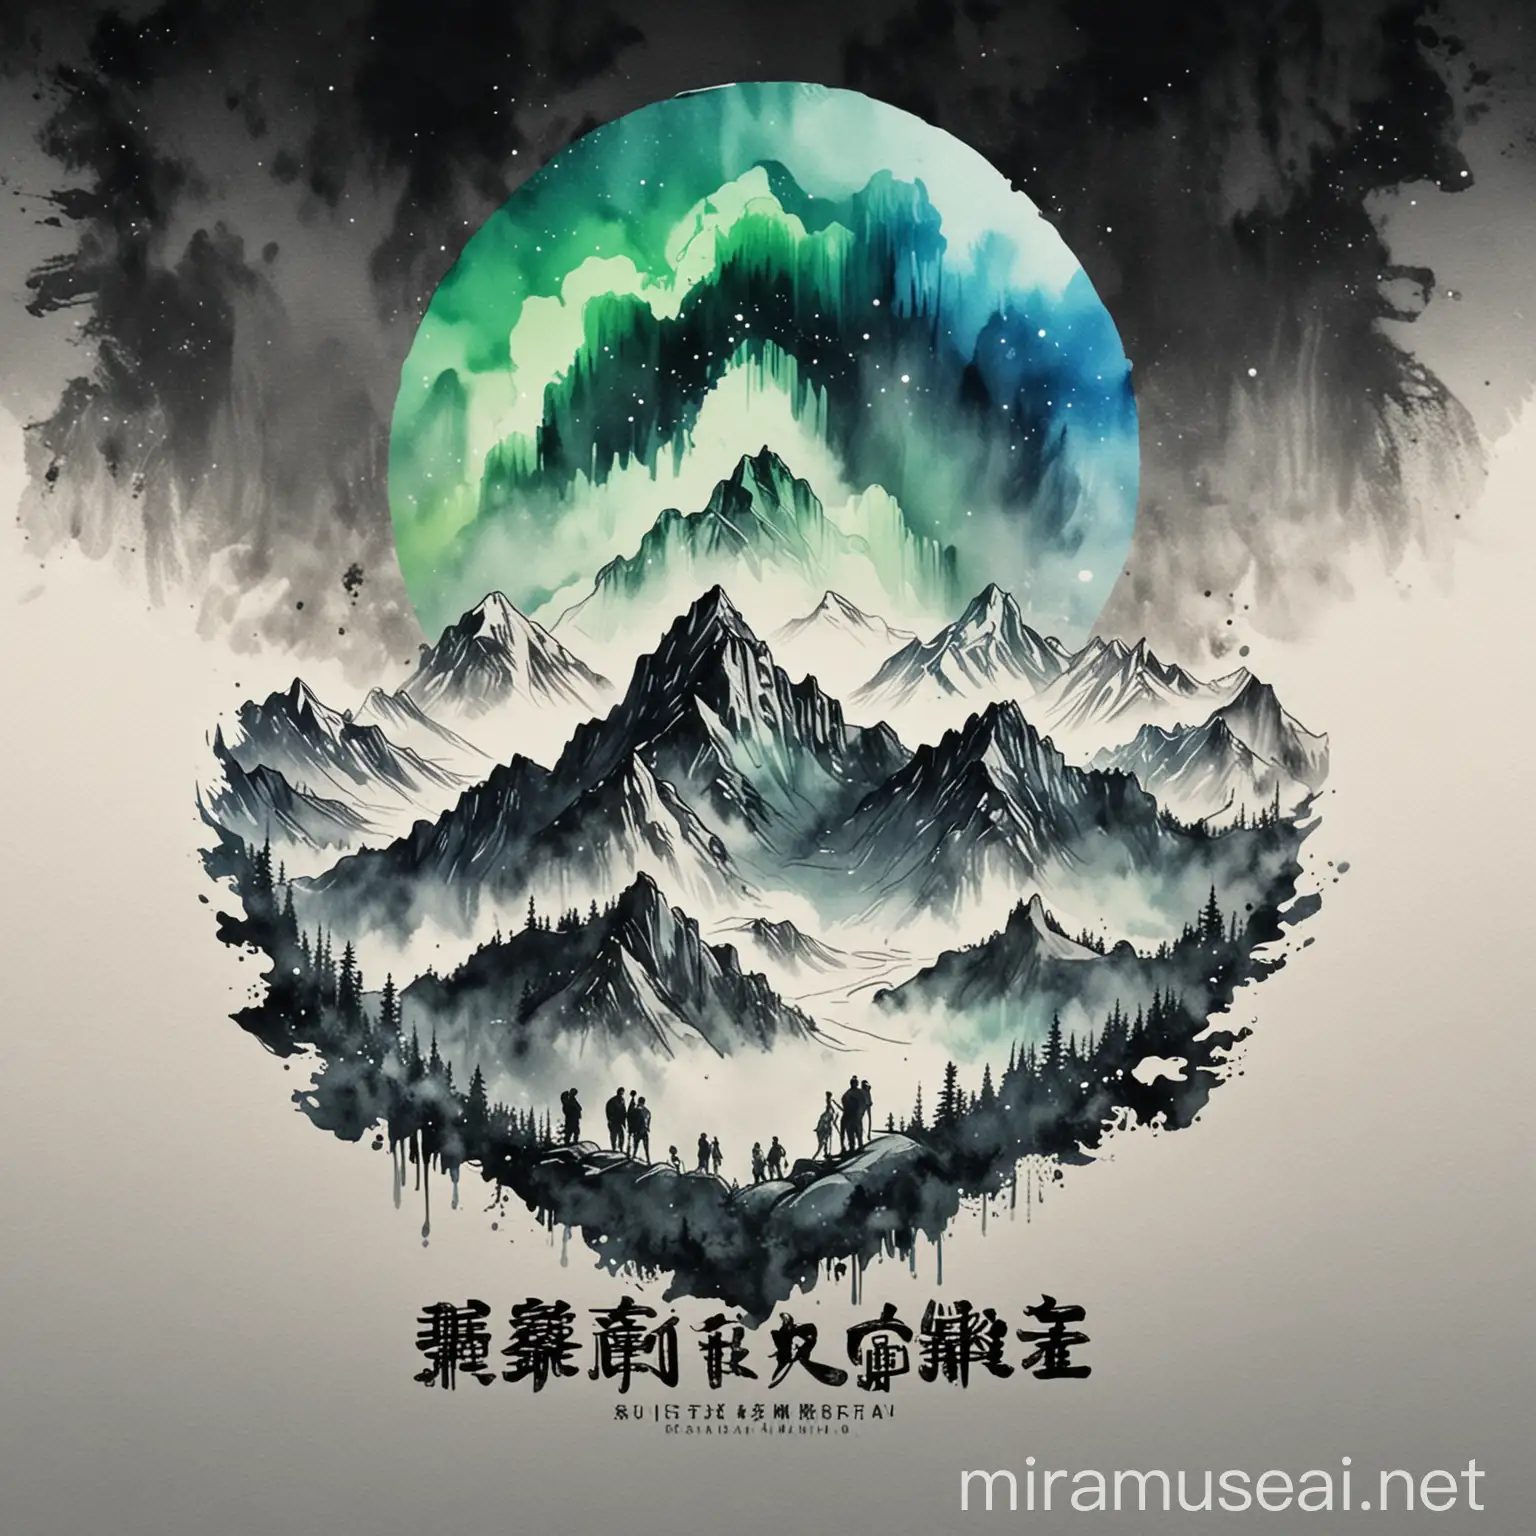 设计一个三顶会的 logo  
要求有三个人在山顶上看极光 
使用中国山水水墨风格